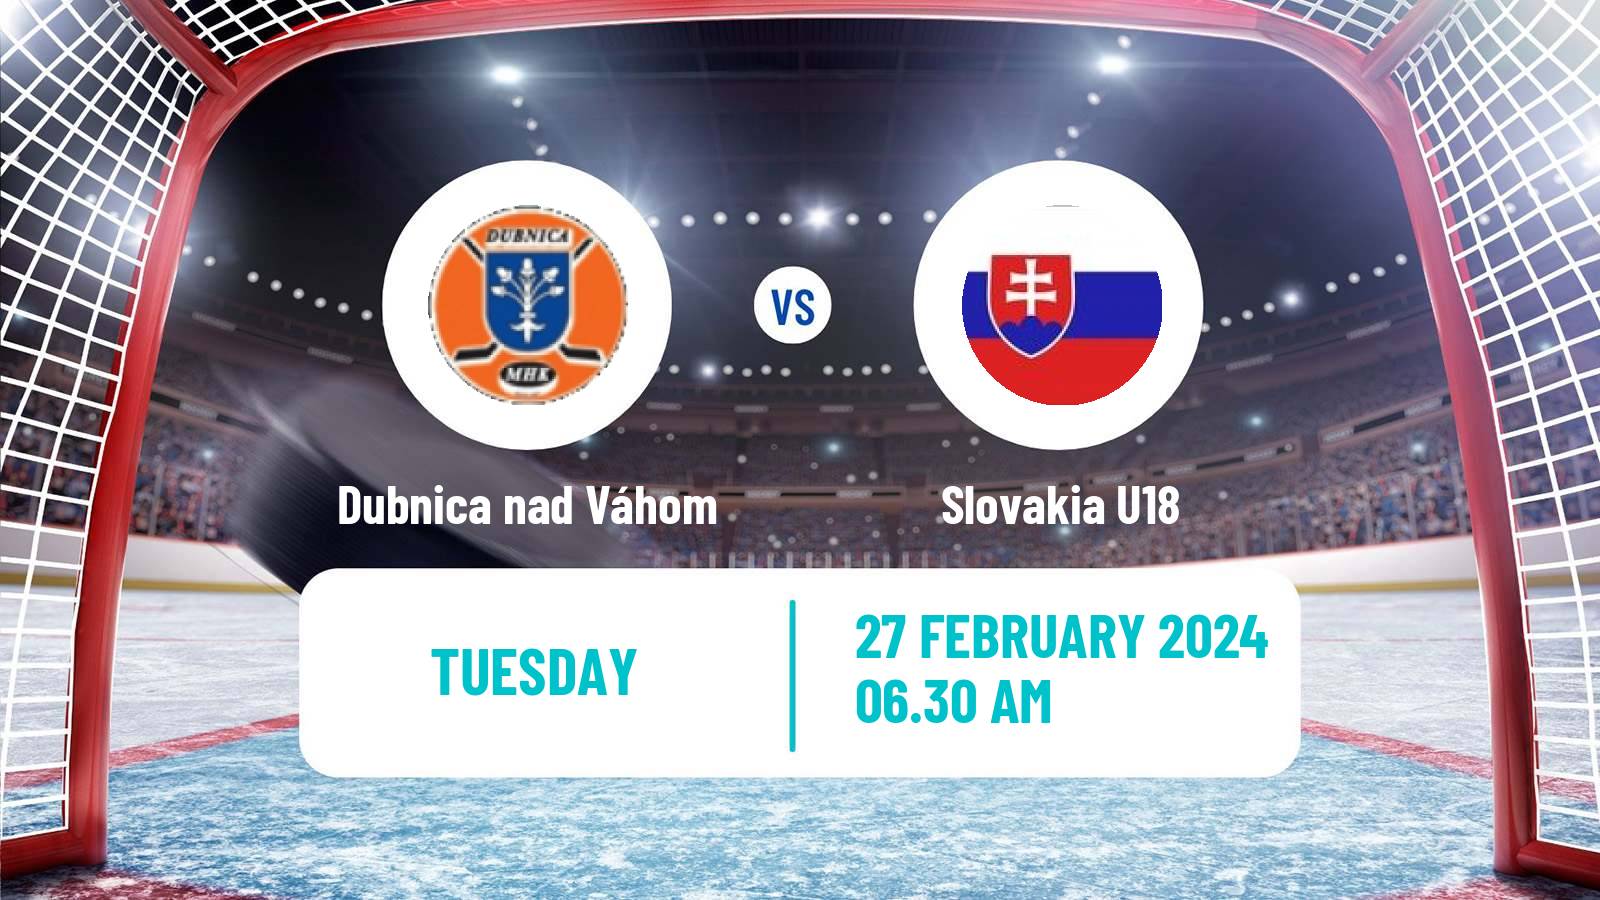 Hockey Slovak 1 Liga Hockey Dubnica nad Váhom - Slovakia U18